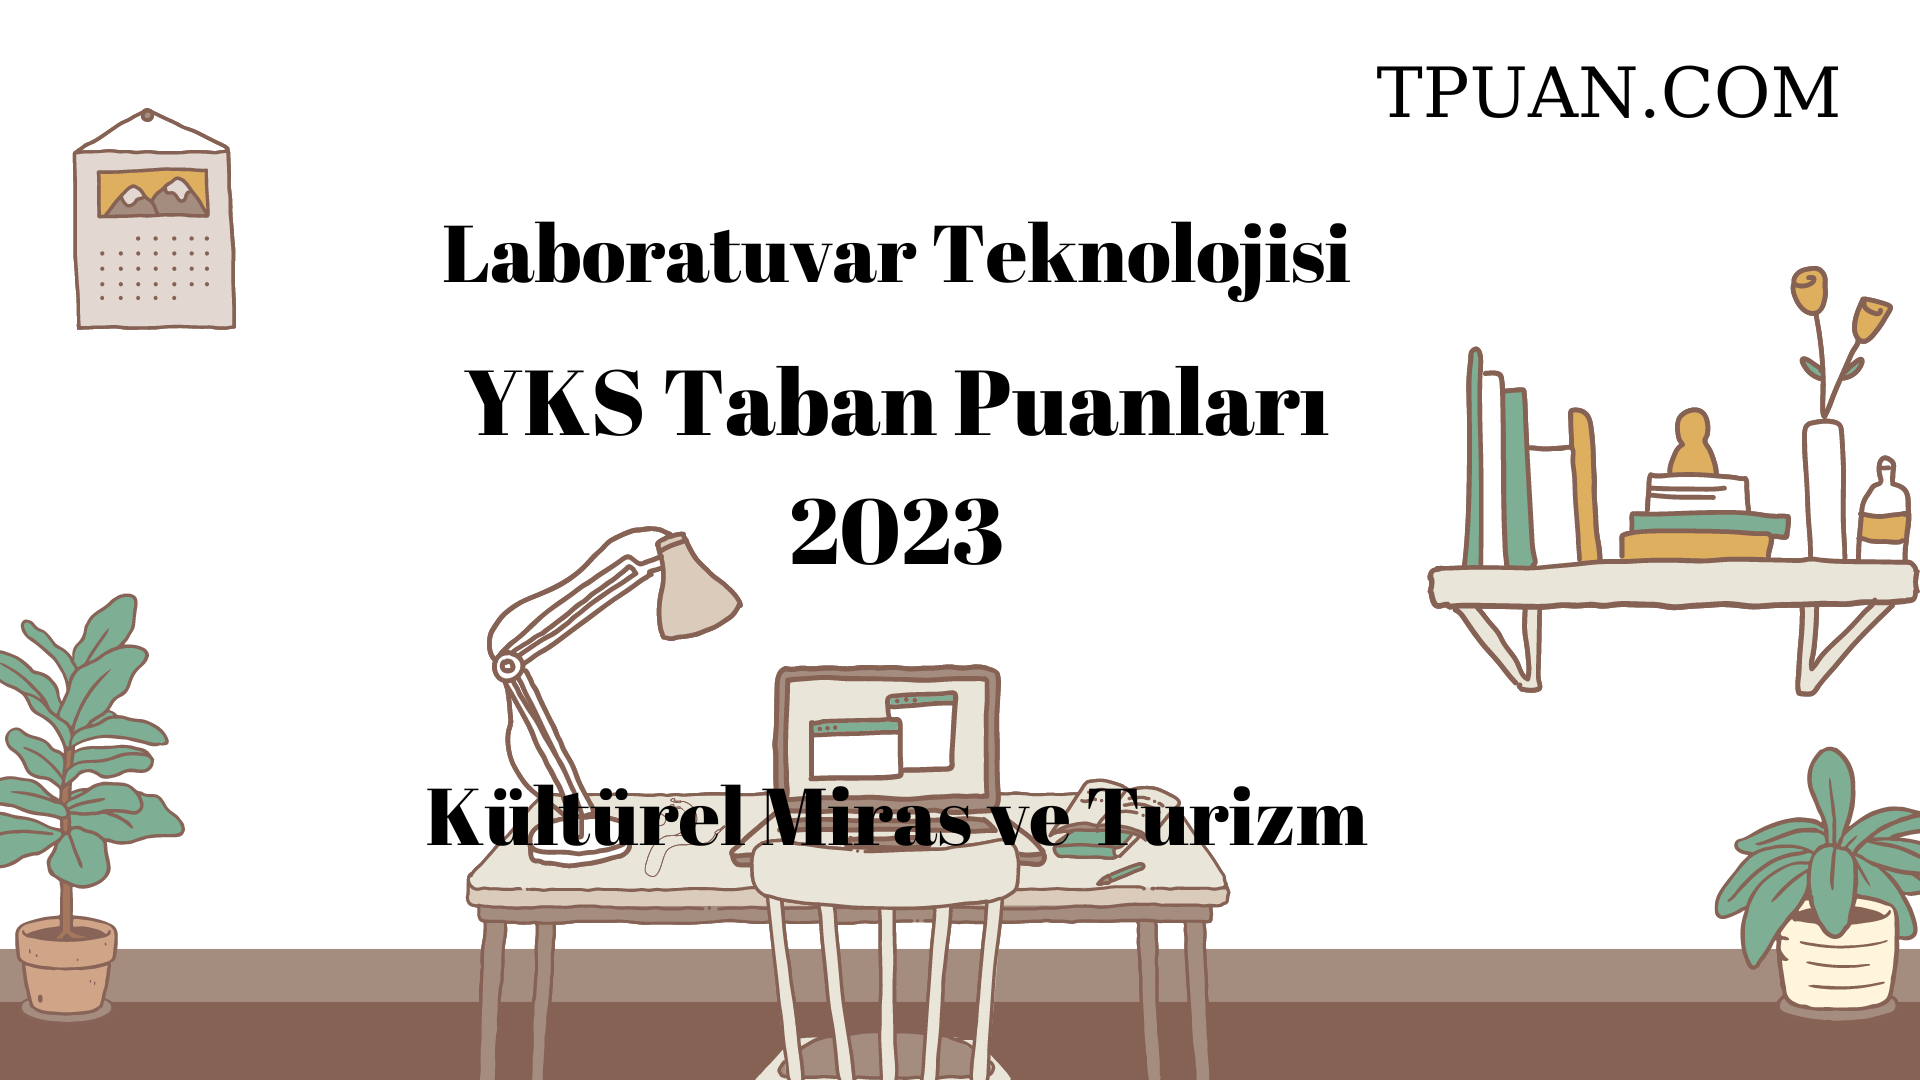  Laboratuvar Teknolojisi YKS Taban Puanları 2023